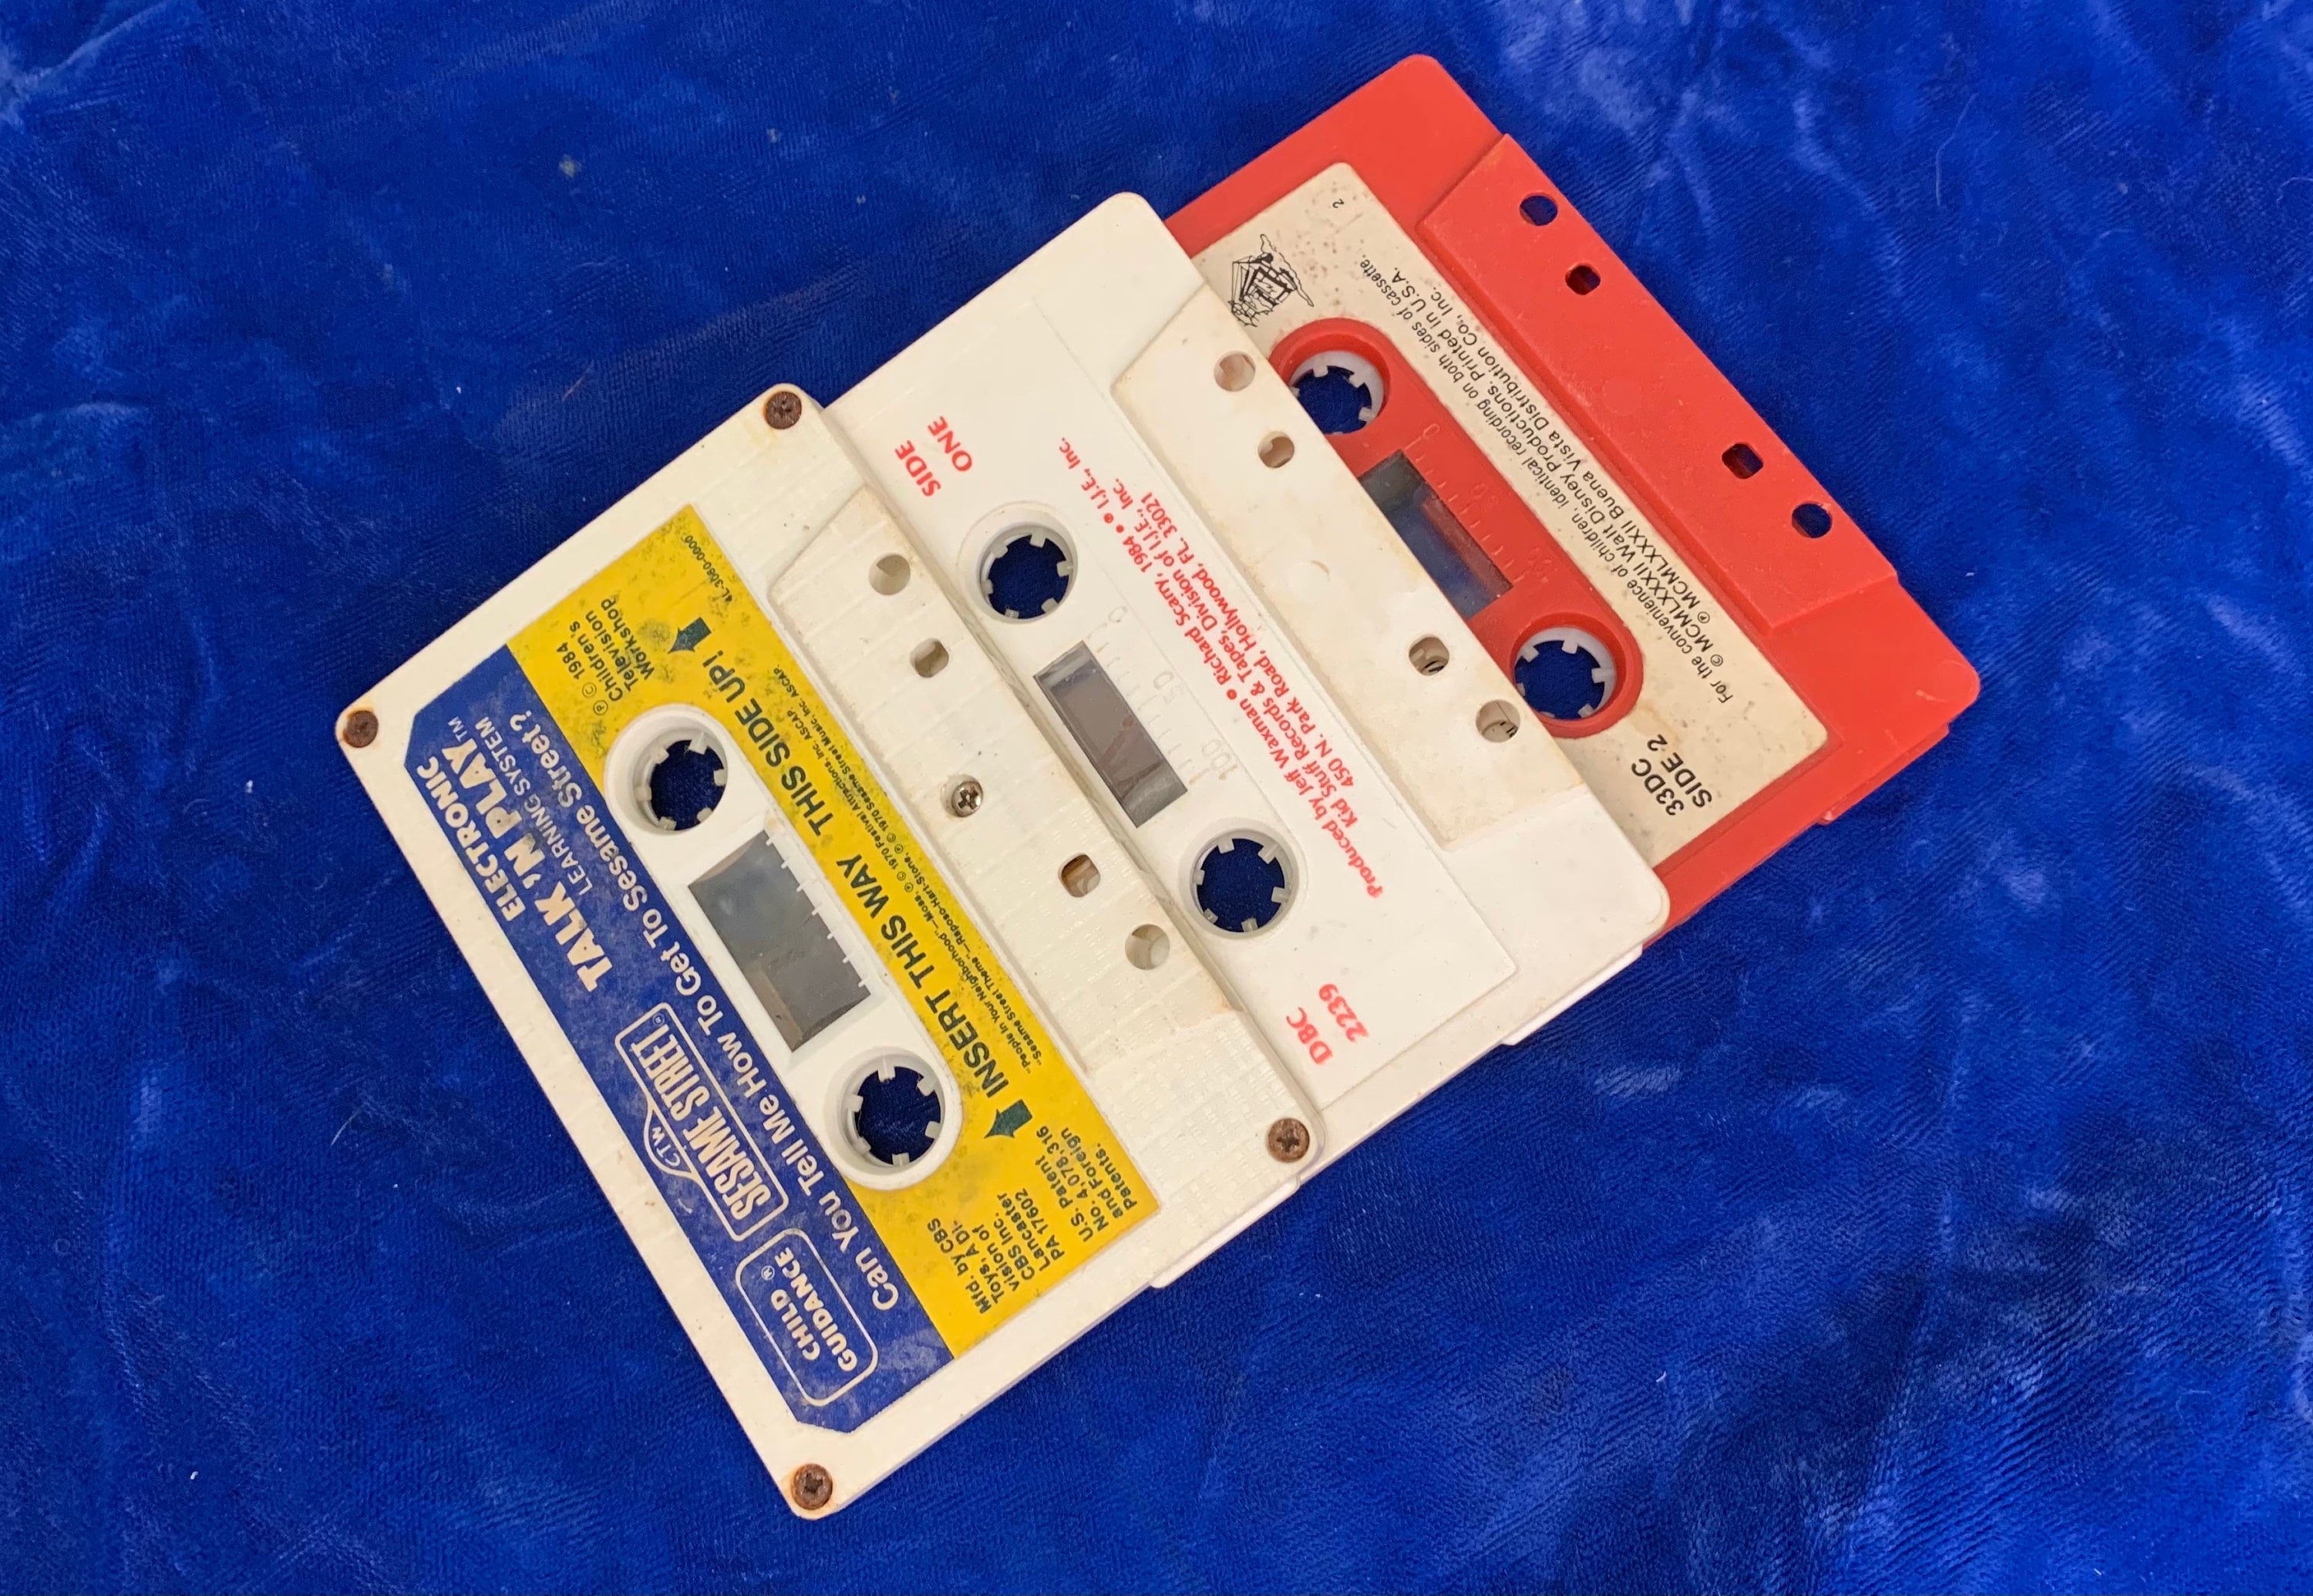 Vintage audio cassette collection - Contines pour enfants